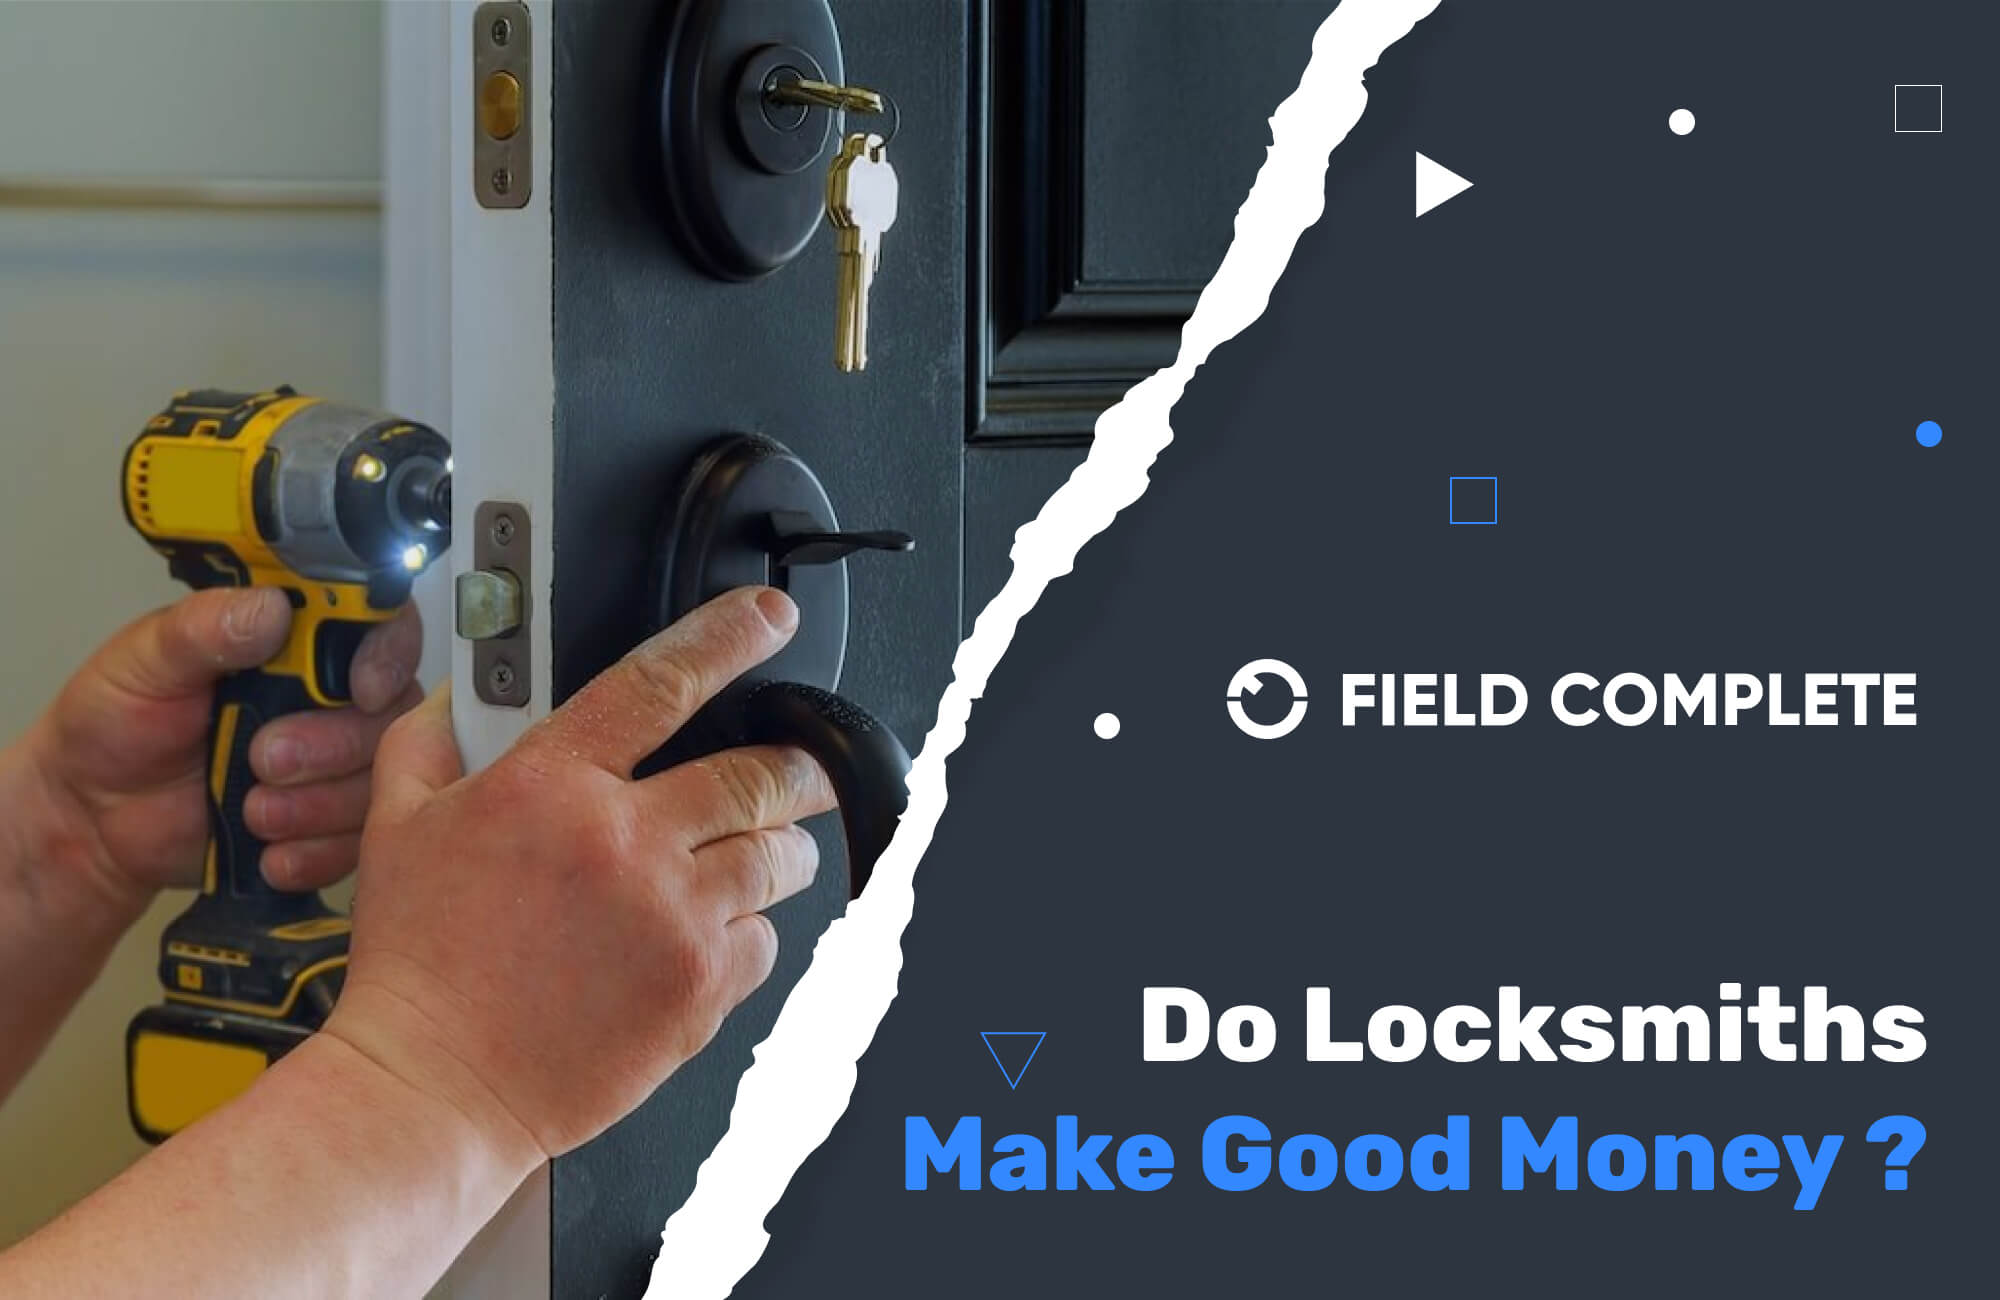 Do locksmiths make good money?